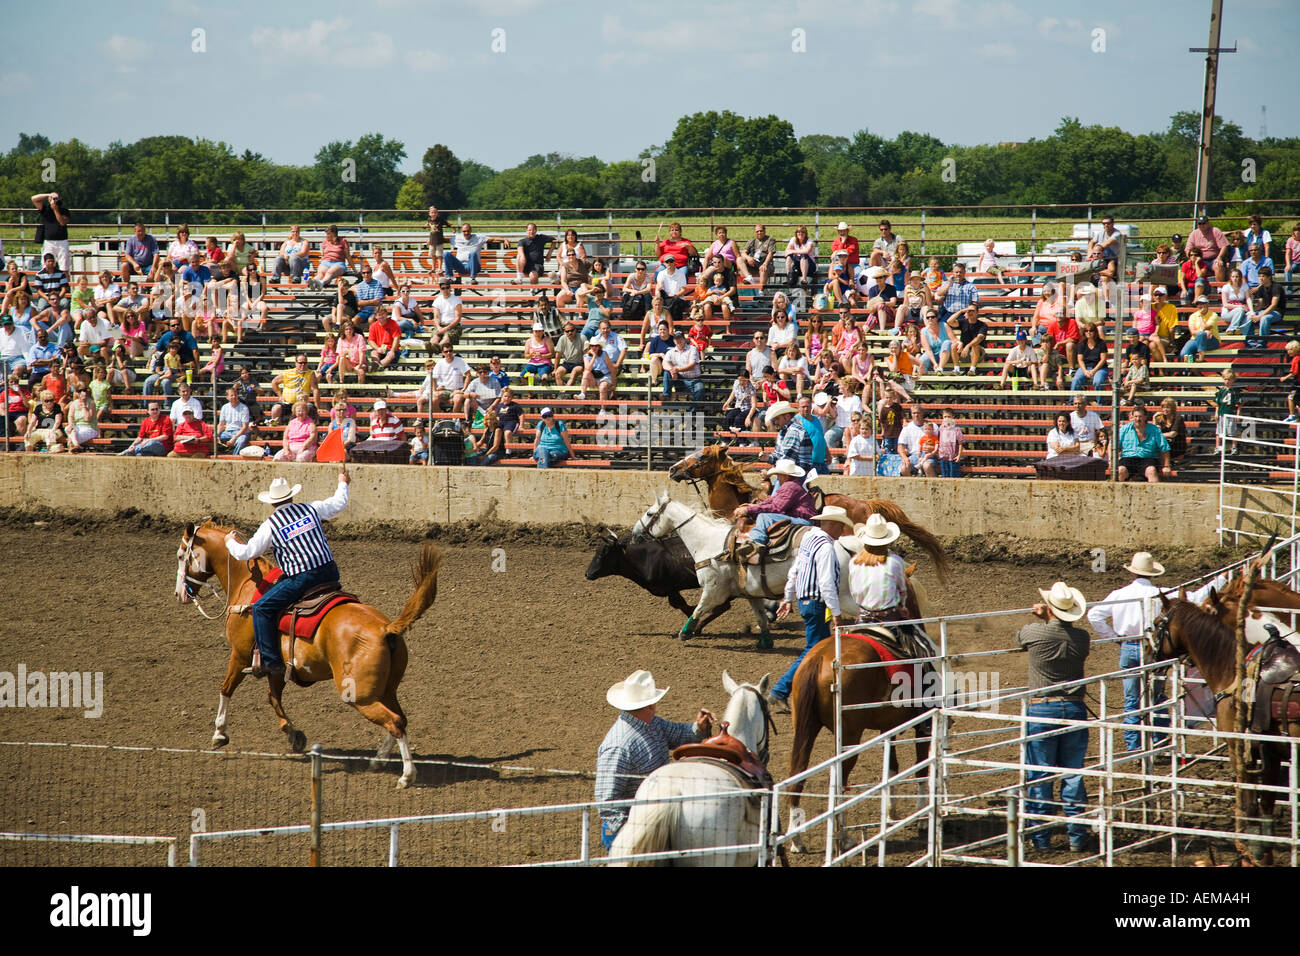 ILLINOIS Grayslake Kalb binden Rodeo-Veranstaltung am Lake County Fair Zuschauer Tribüne Pferde und Reiter im ring Stockfoto